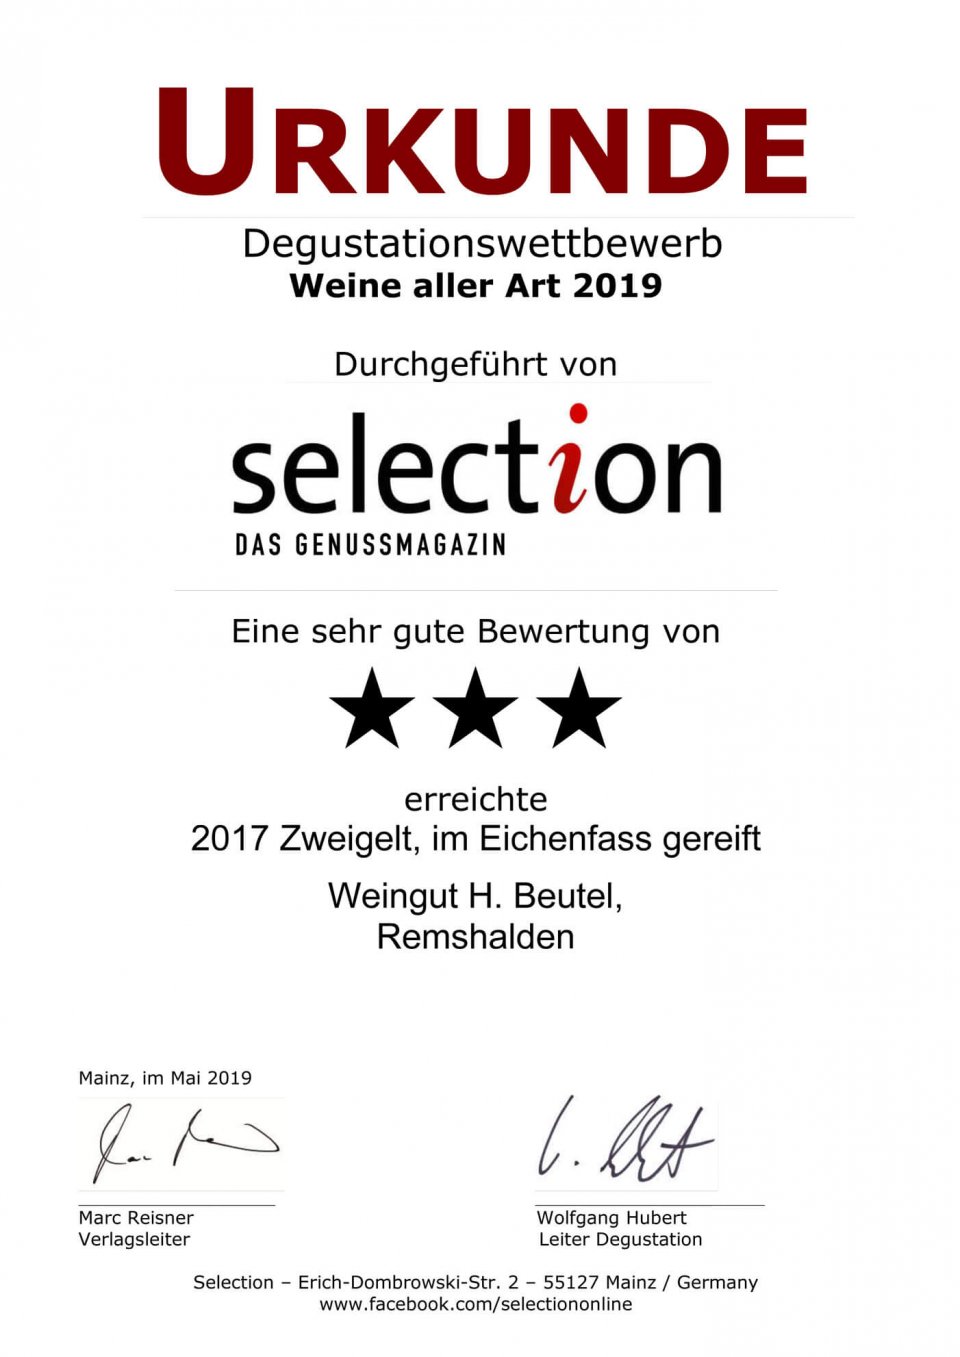 Selection Urkunde Zweigelt im Eichenfass gereift 2017